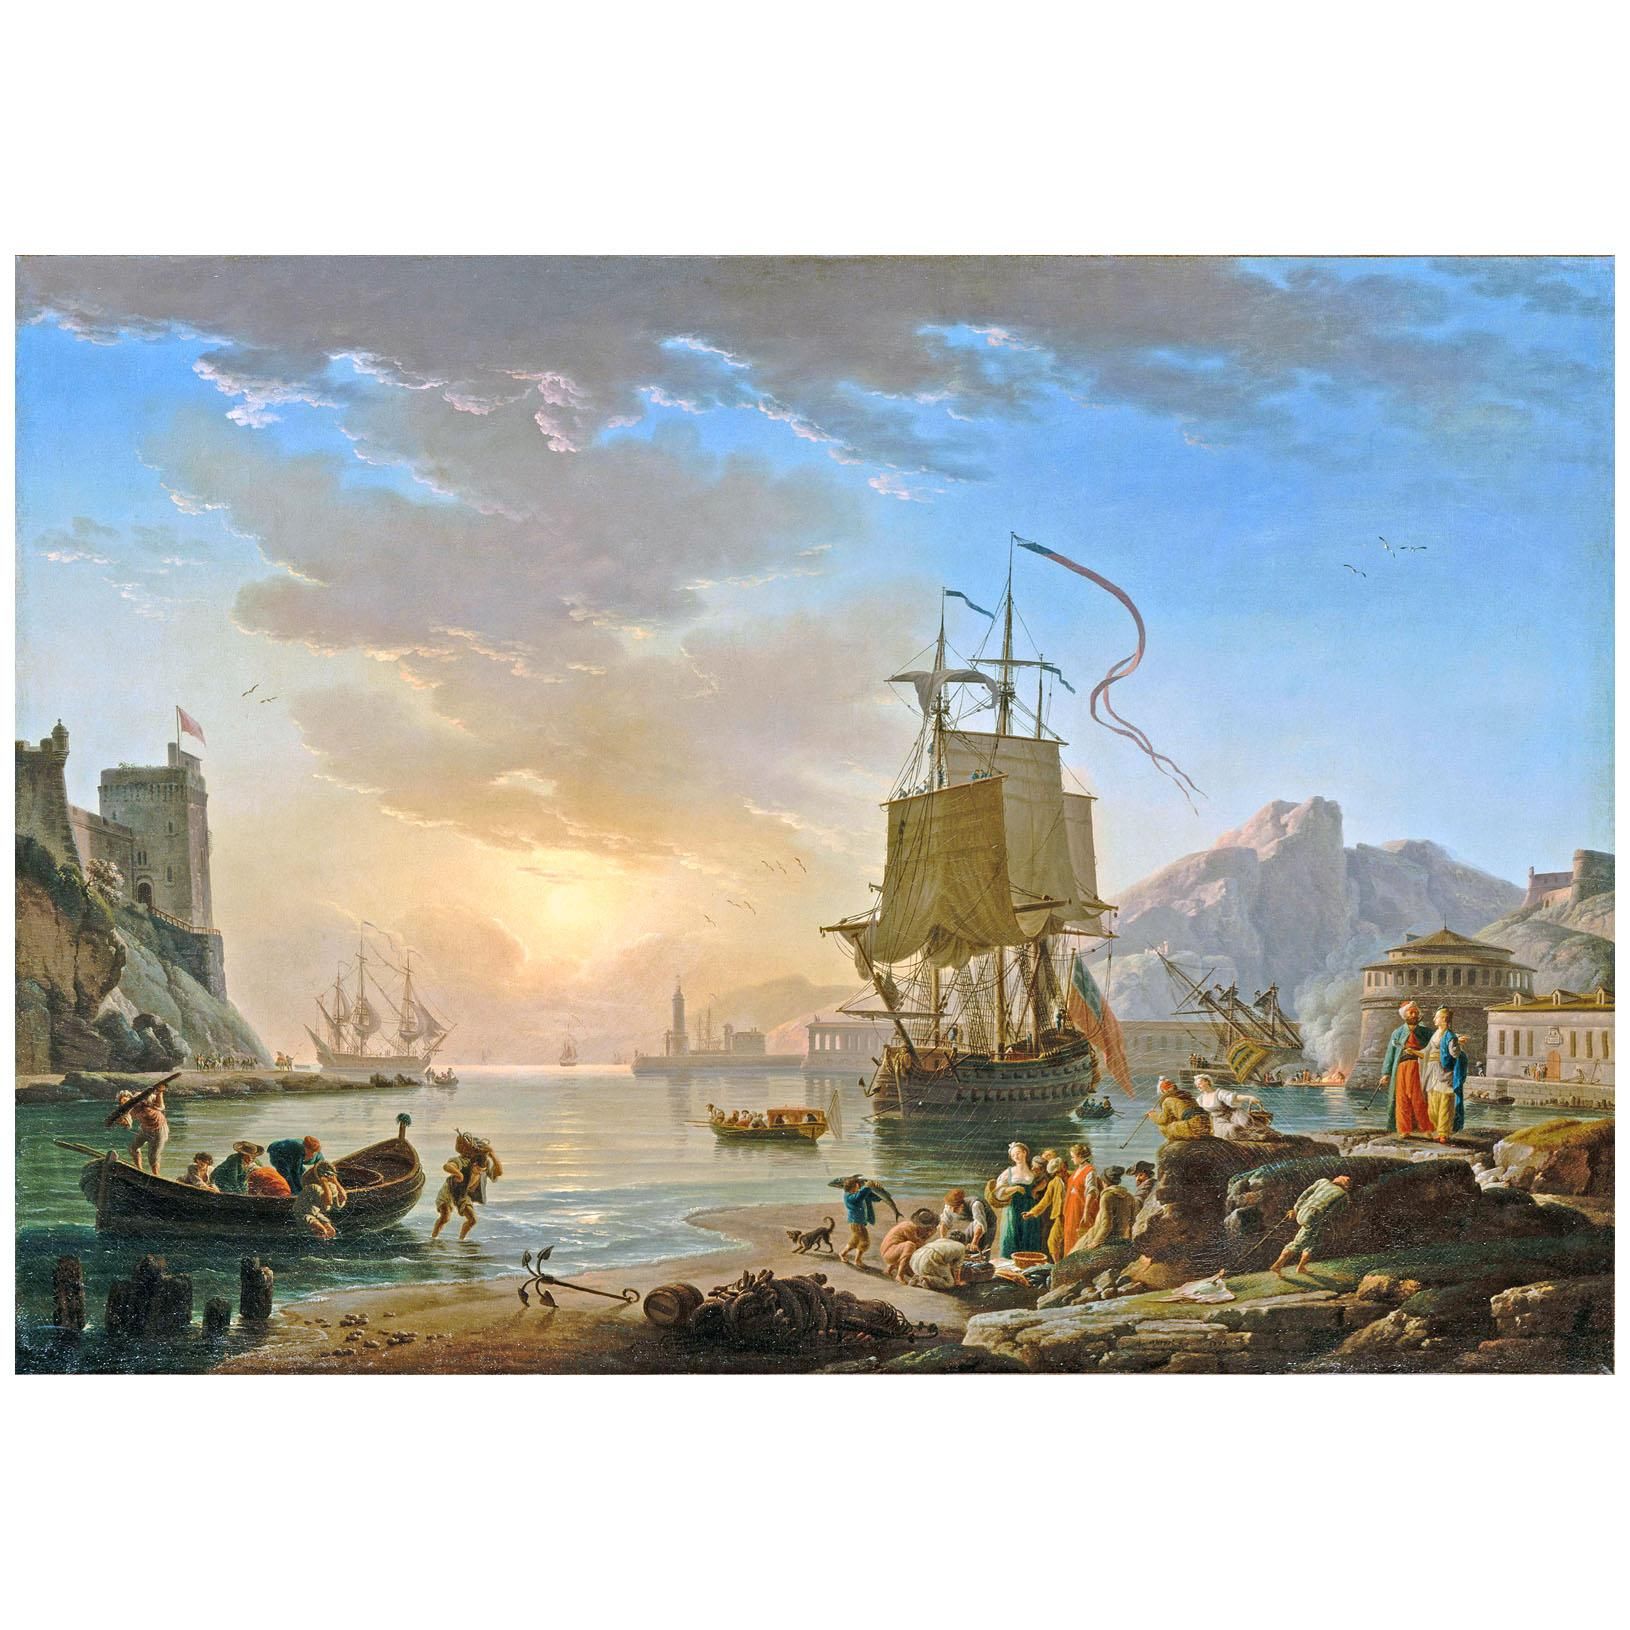 Joseph Vernet. Marine, soleil couchant. 1774. Musee du Louvre